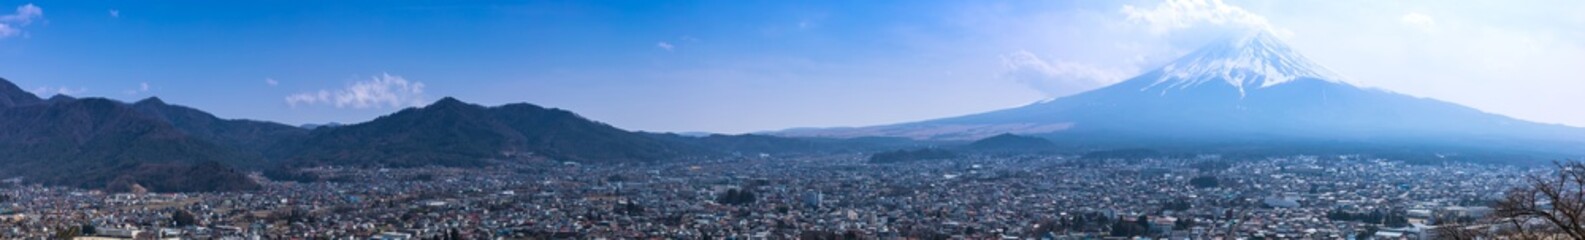 (山梨県-風景パノラマ)富士山と富士吉田市の景観２